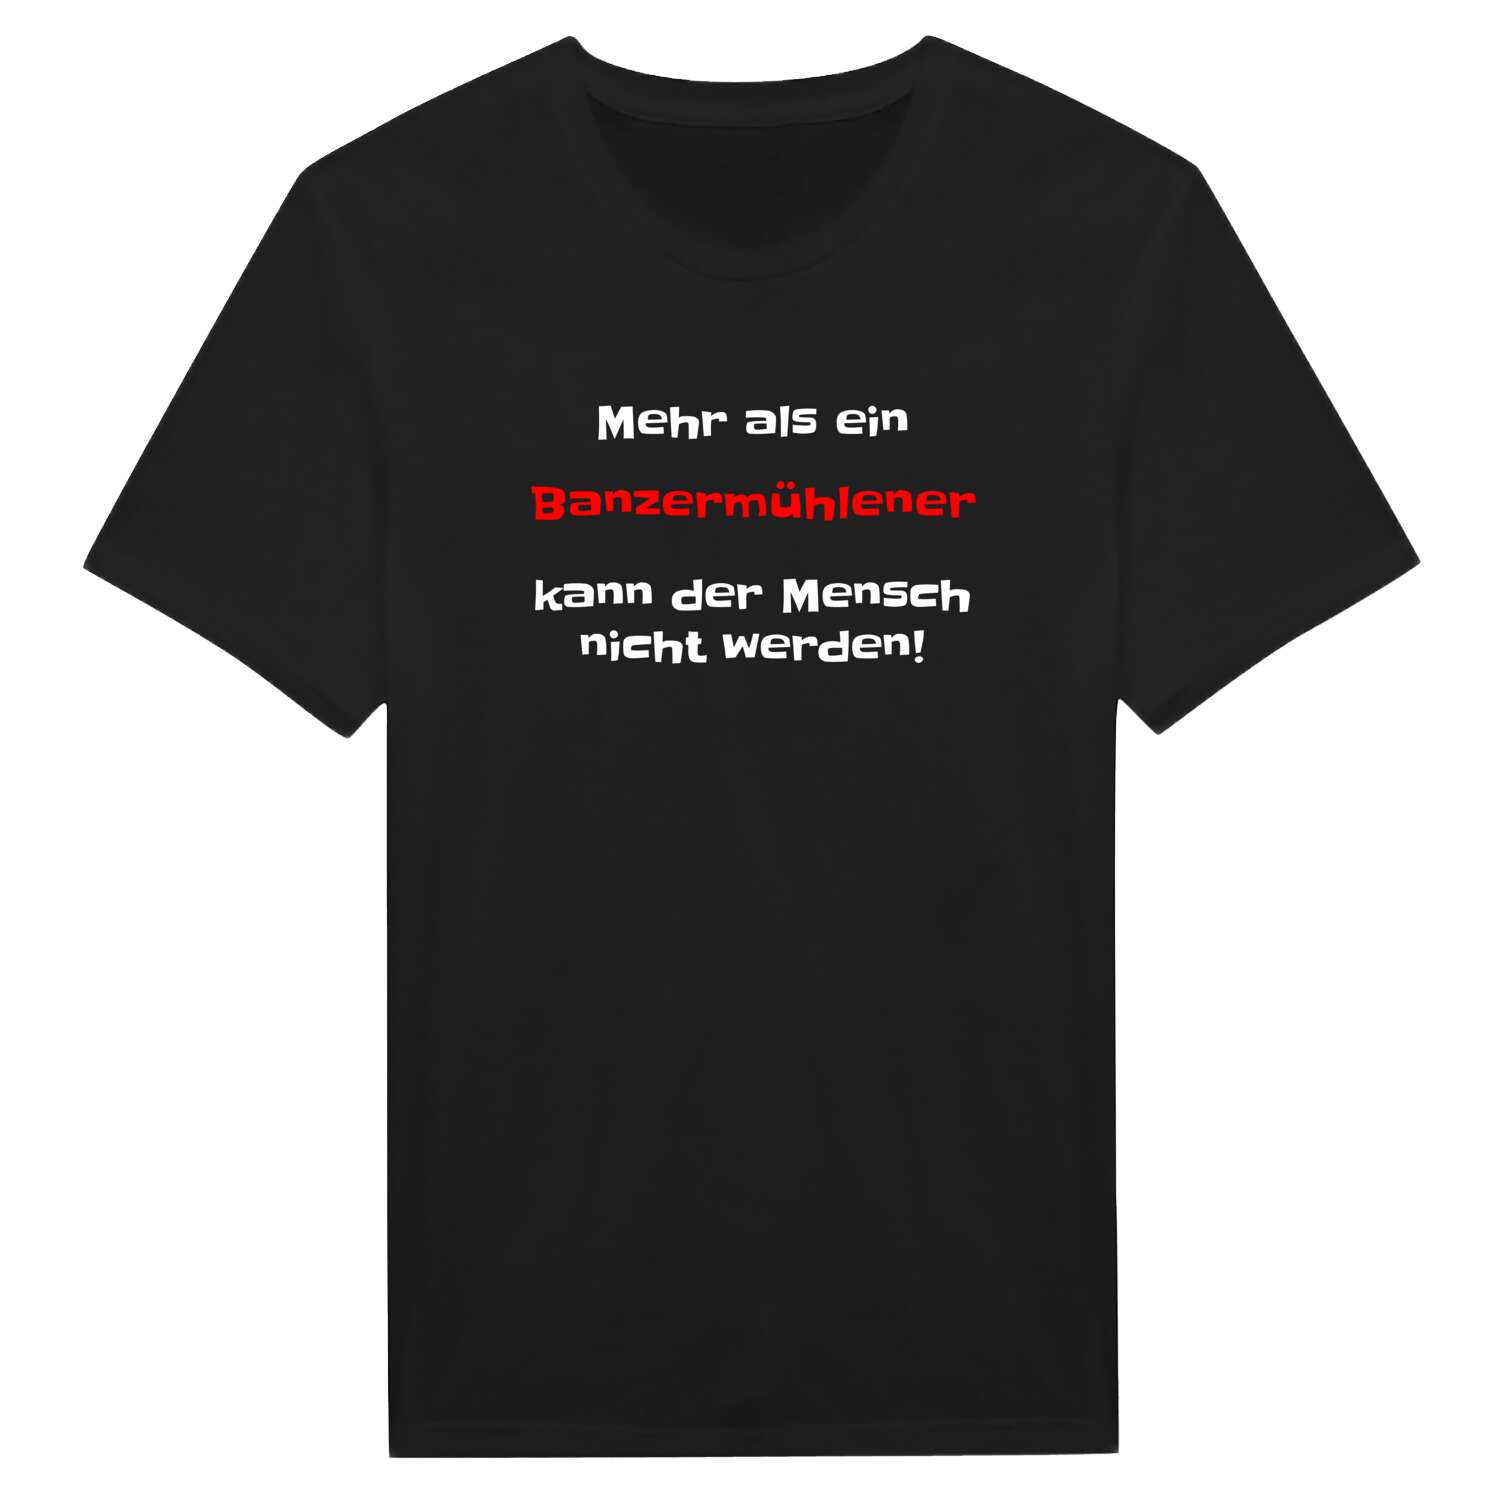 Banzermühle T-Shirt »Mehr als ein«